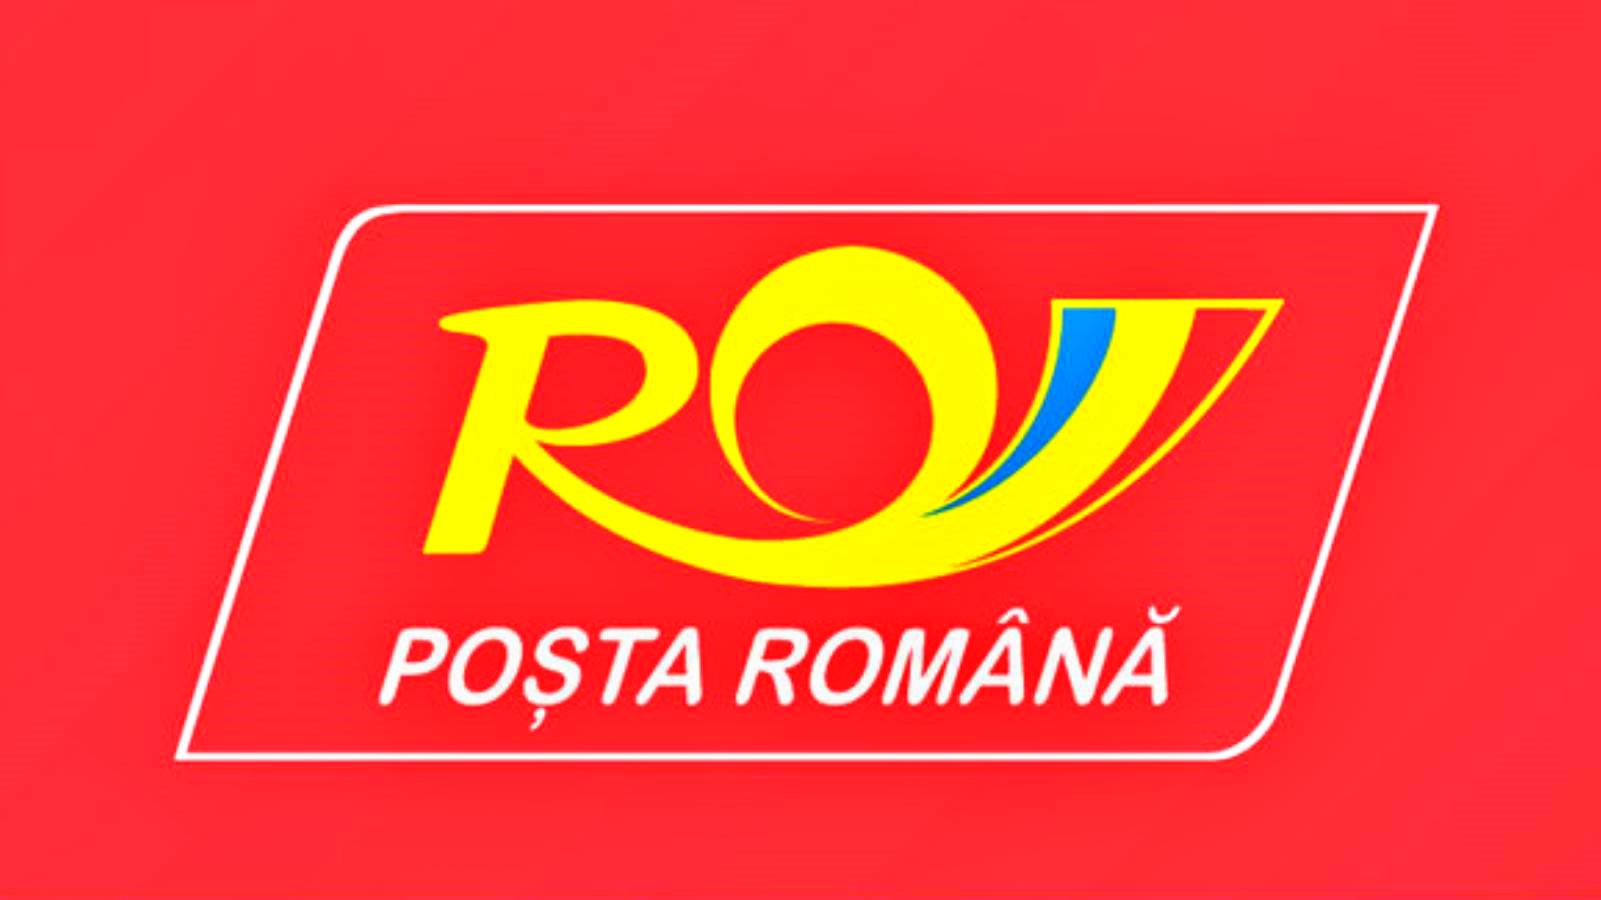 Applicatie voor het volgen van Roemeense postpakketten